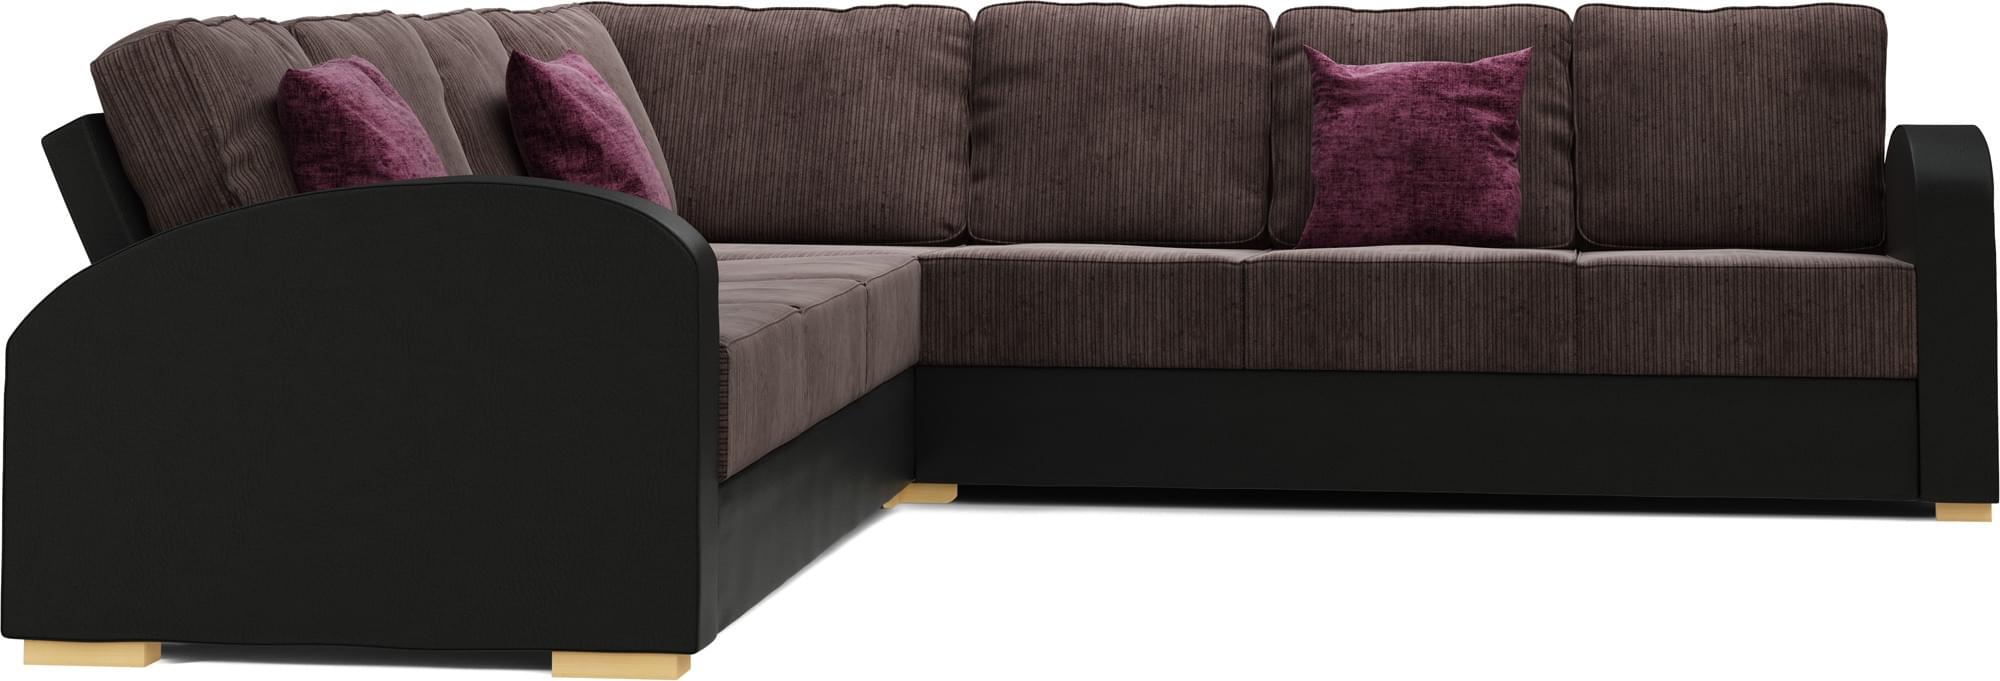 Orb 4x4 Corner Double Sofa Bed